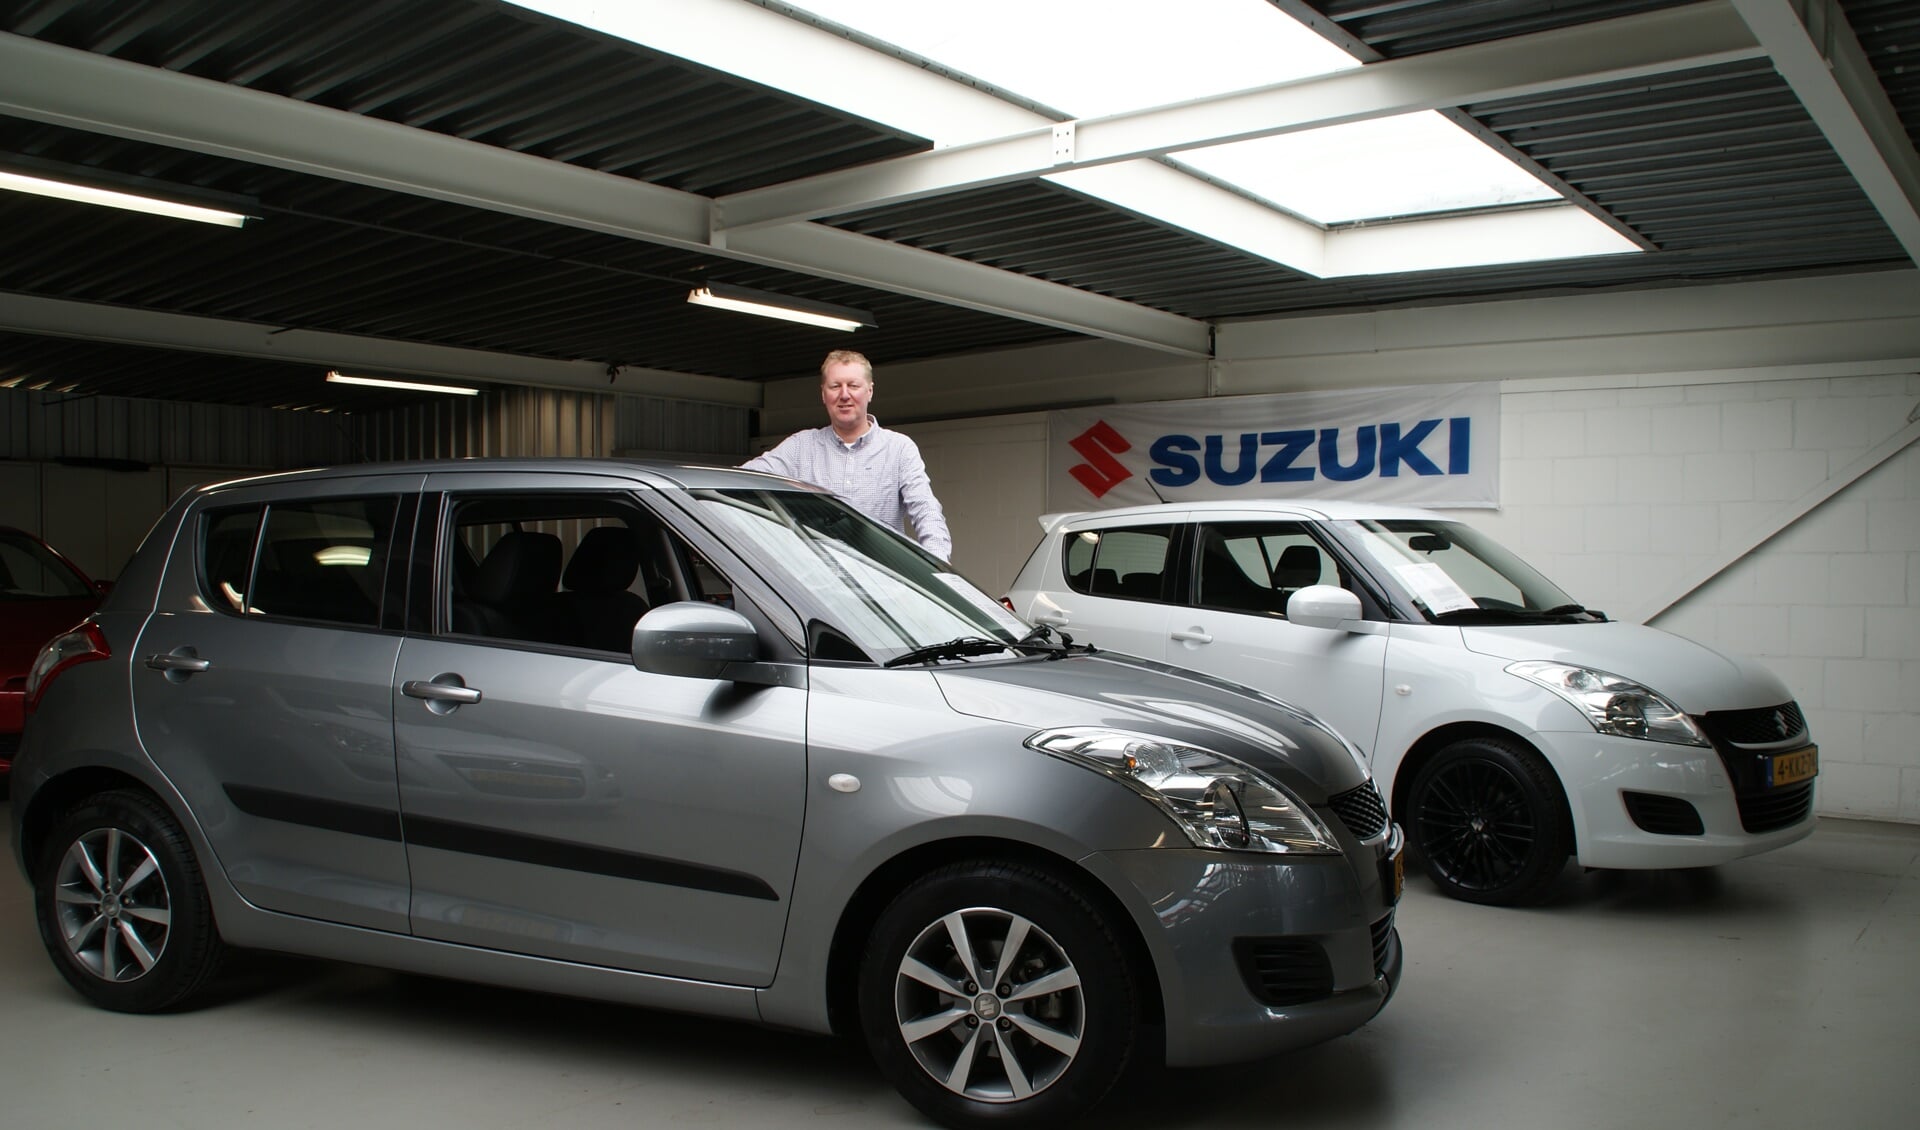 Patrick van den Berg bij de zilvergrijs kleurige Suzuki Swift 1.2 Automaat.